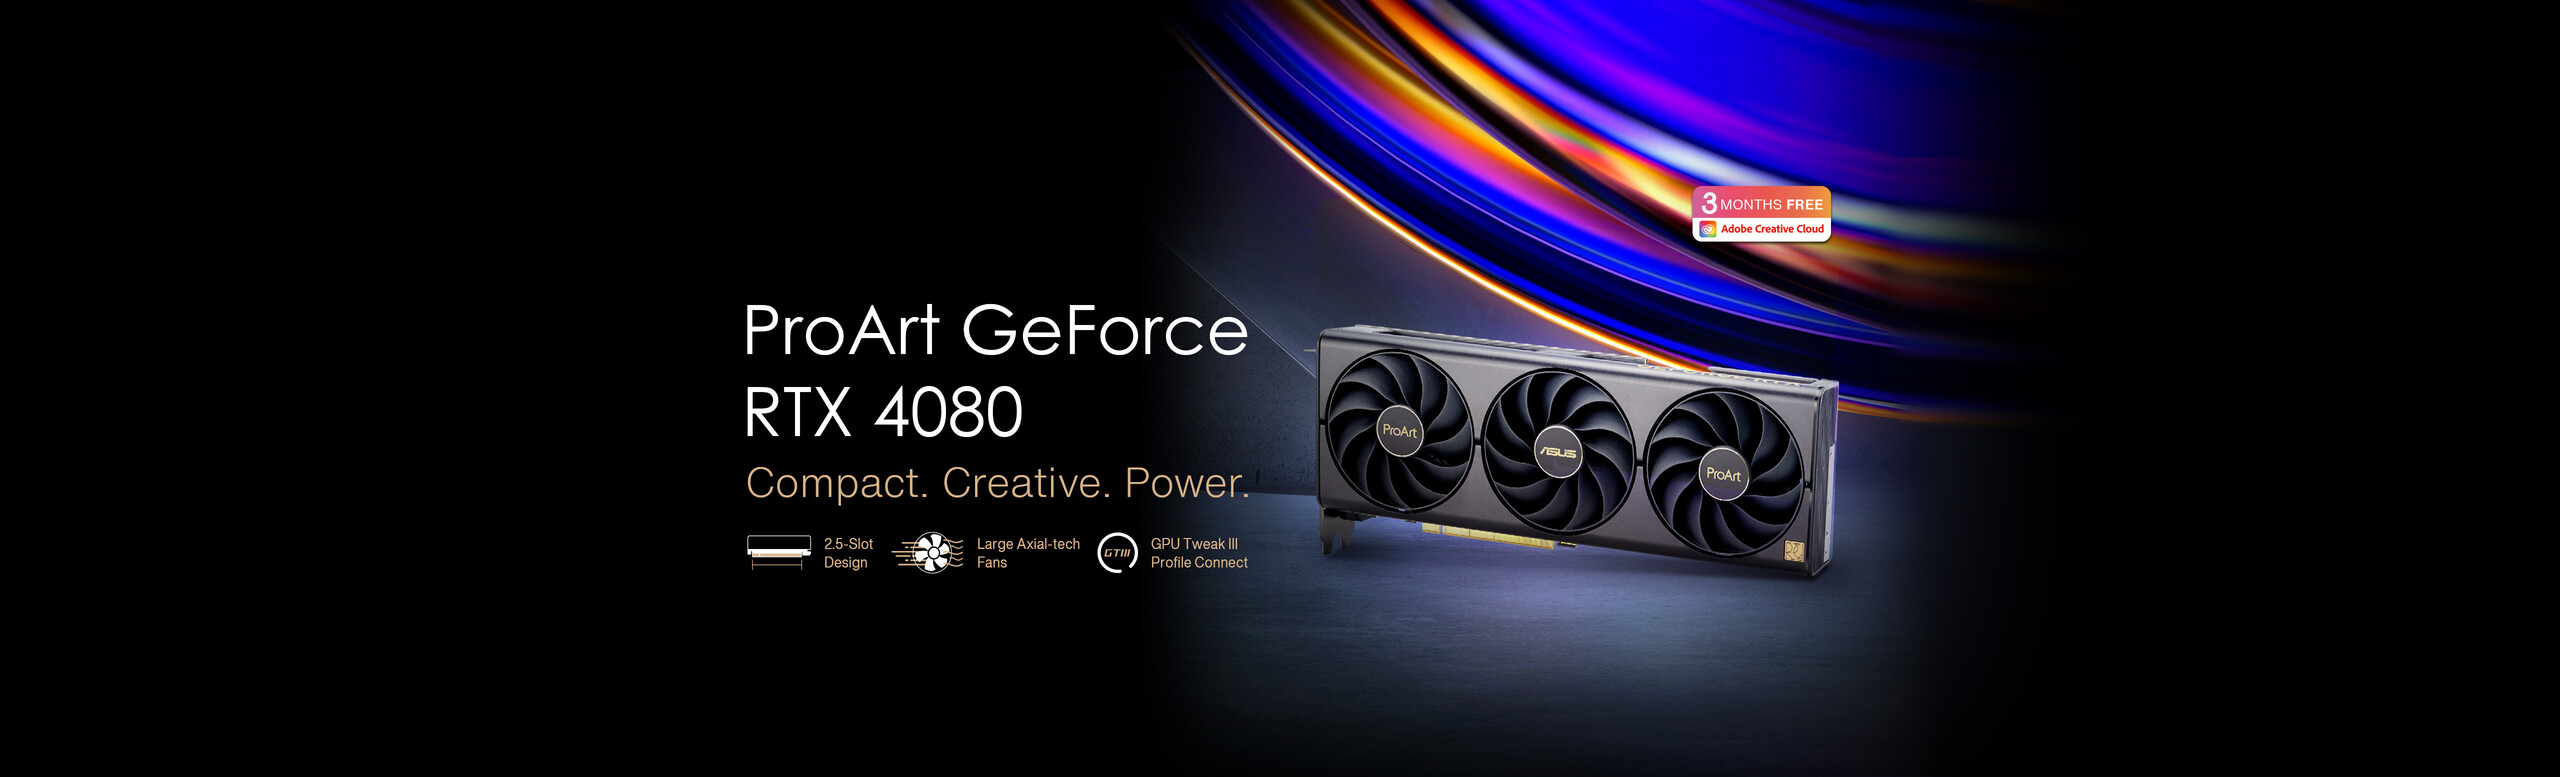 ProArt GeForce RTX 4080